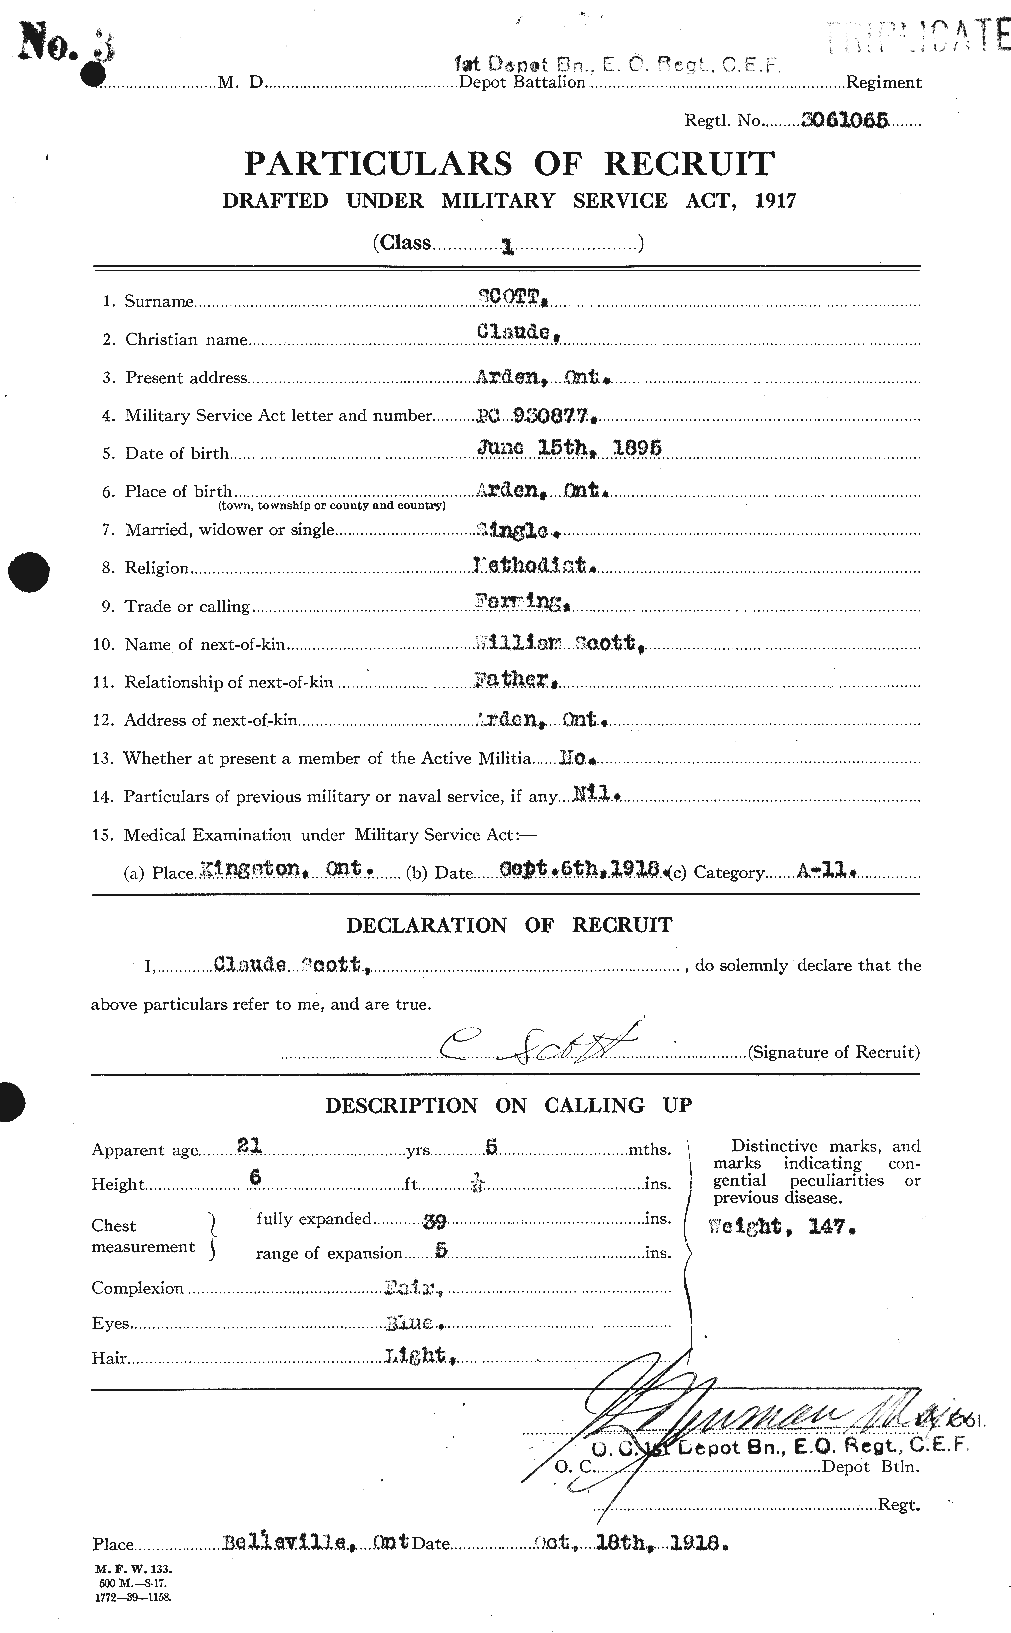 Dossiers du Personnel de la Première Guerre mondiale - CEC 085635a